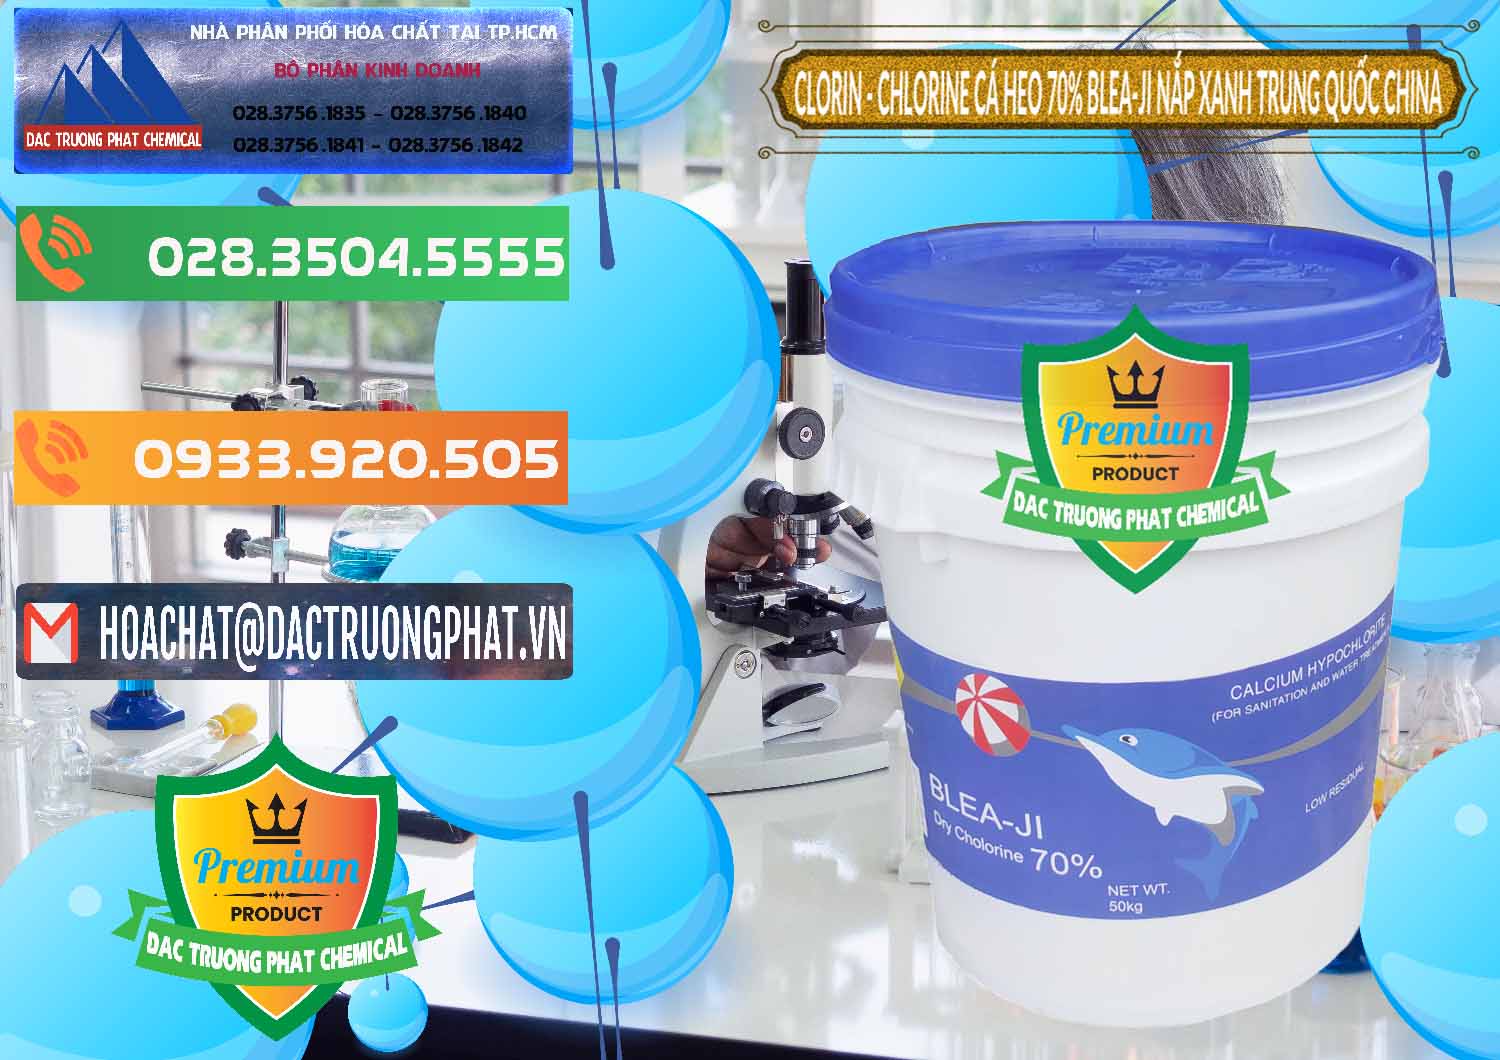 Nơi bán & cung cấp Clorin - Chlorine Cá Heo 70% Cá Heo Blea-Ji Thùng Tròn Nắp Xanh Trung Quốc China - 0208 - Nhập khẩu - cung cấp hóa chất tại TP.HCM - hoachatxulynuoc.com.vn